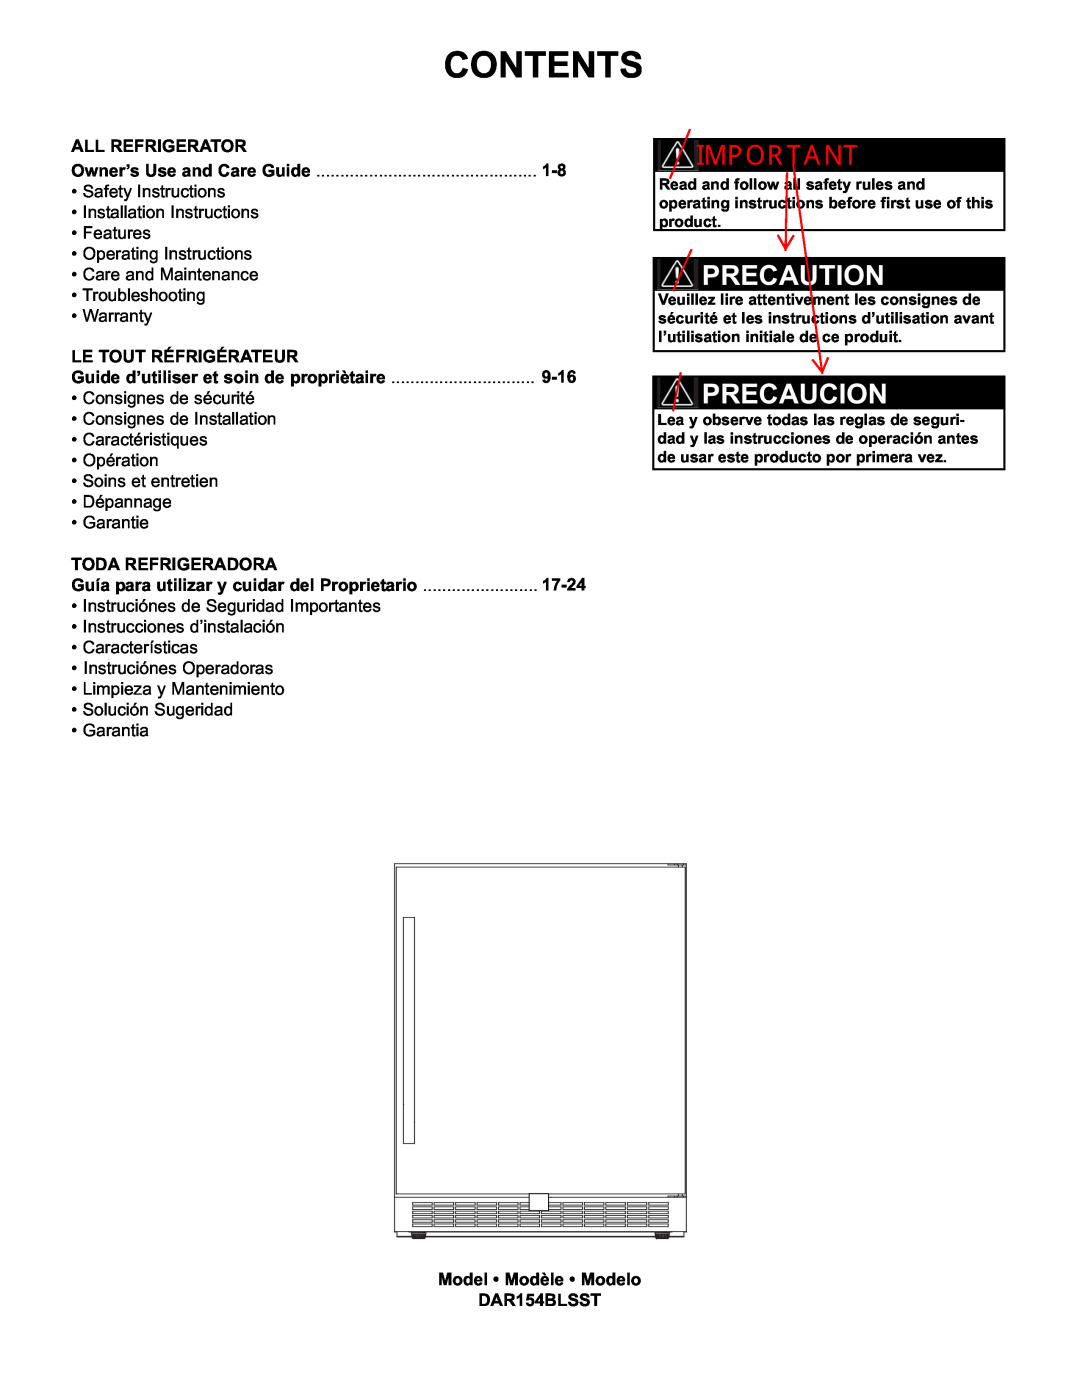 Danby DAR154BLSST manual Precaution, Precaucion, All Refrigerator, Le Tout Réfrigérateur, 9-16, Toda Refrigeradora, 17-24 